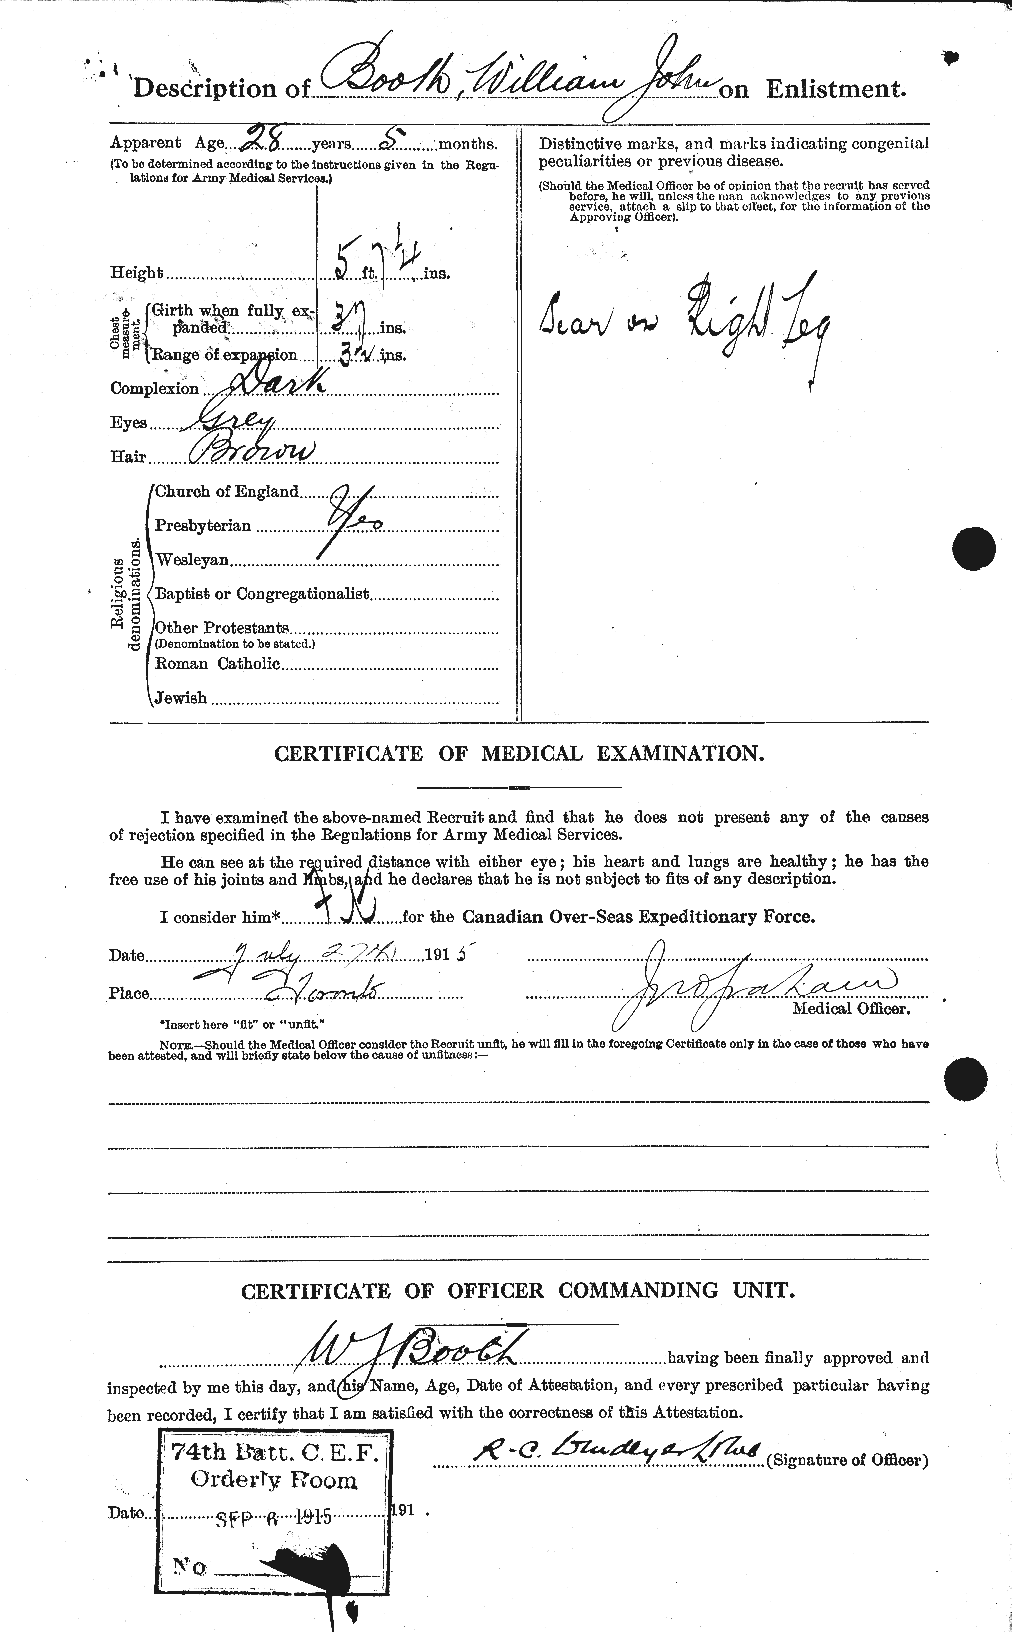 Dossiers du Personnel de la Première Guerre mondiale - CEC 251032b